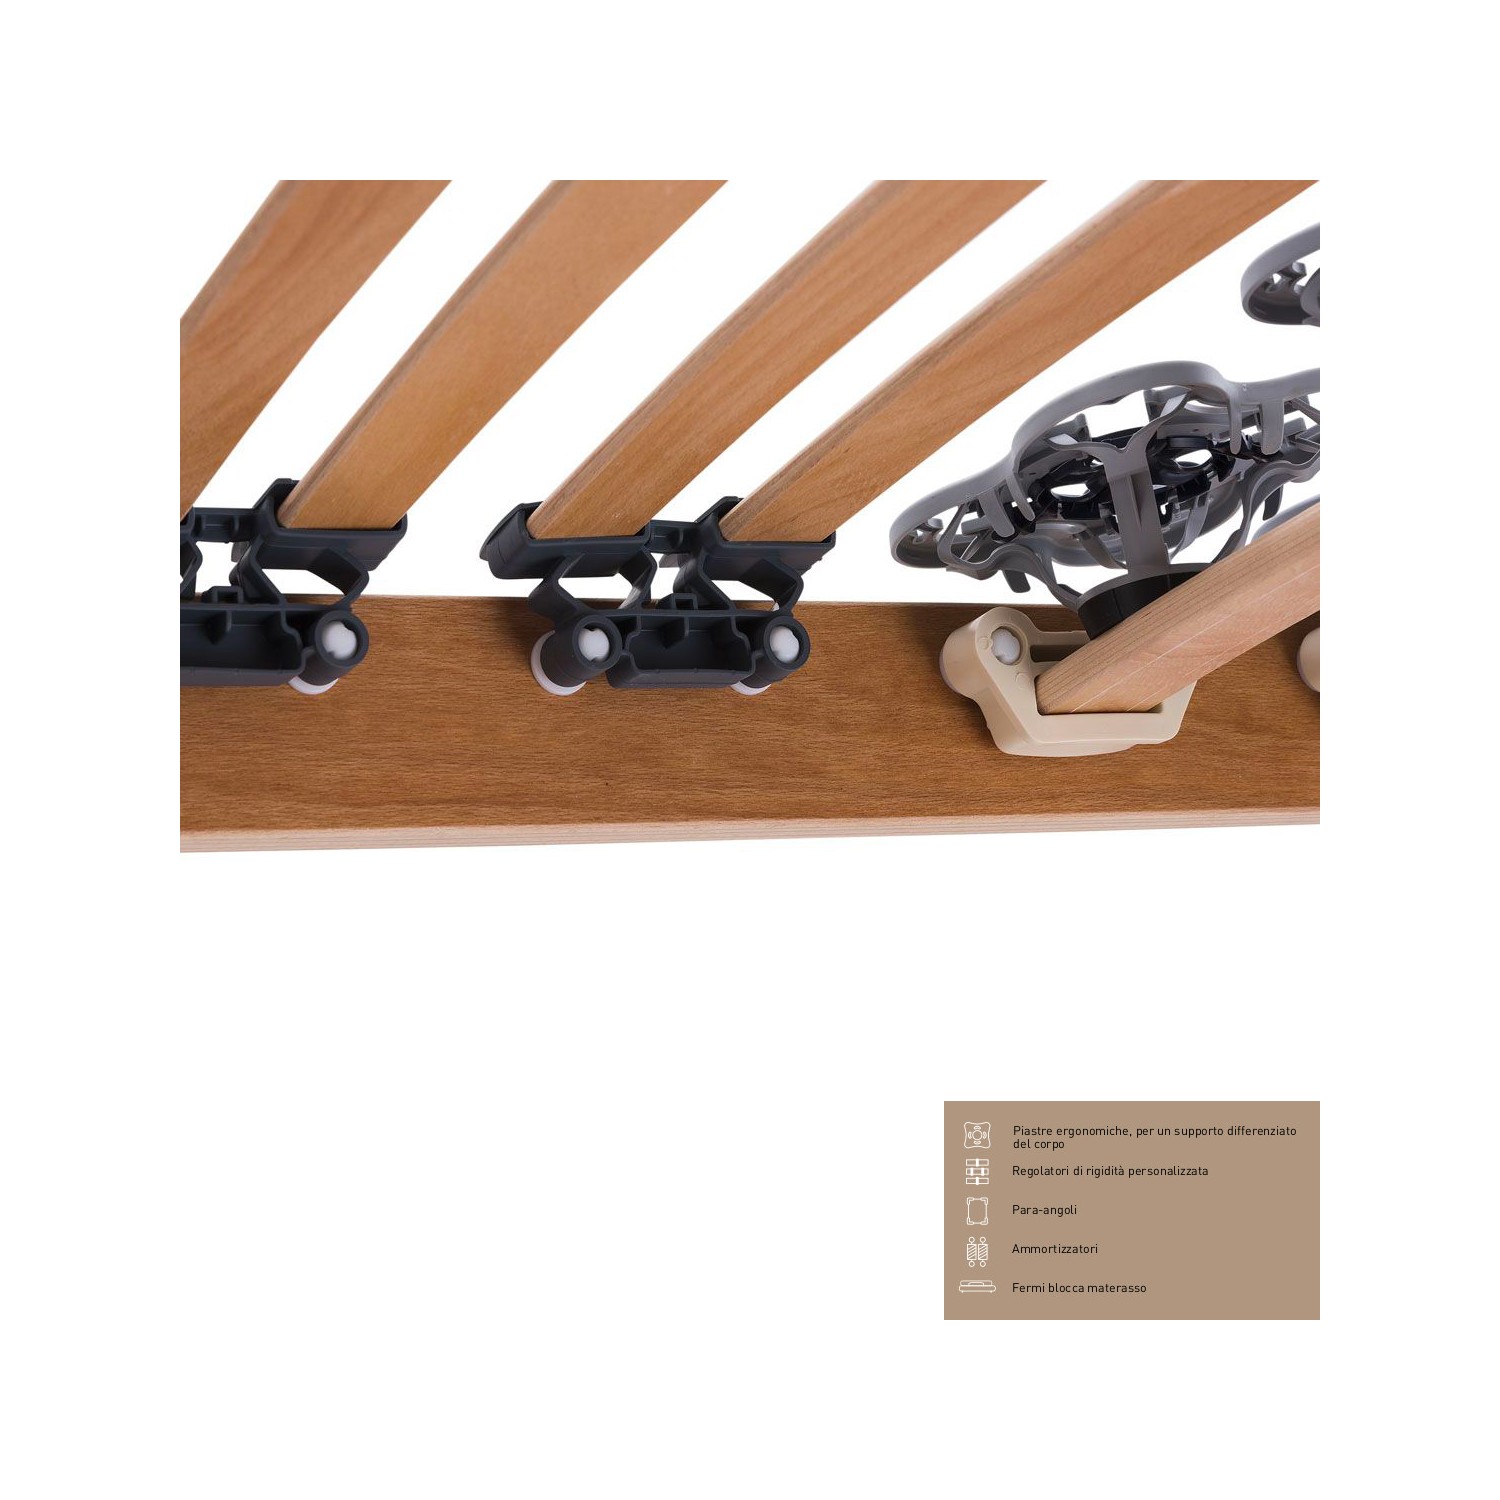 Rete Magniflex ERGO DUE FISSA cm 160 x 190/195/200 piastre ergonomiche, regolatori di rigidità doghe legno